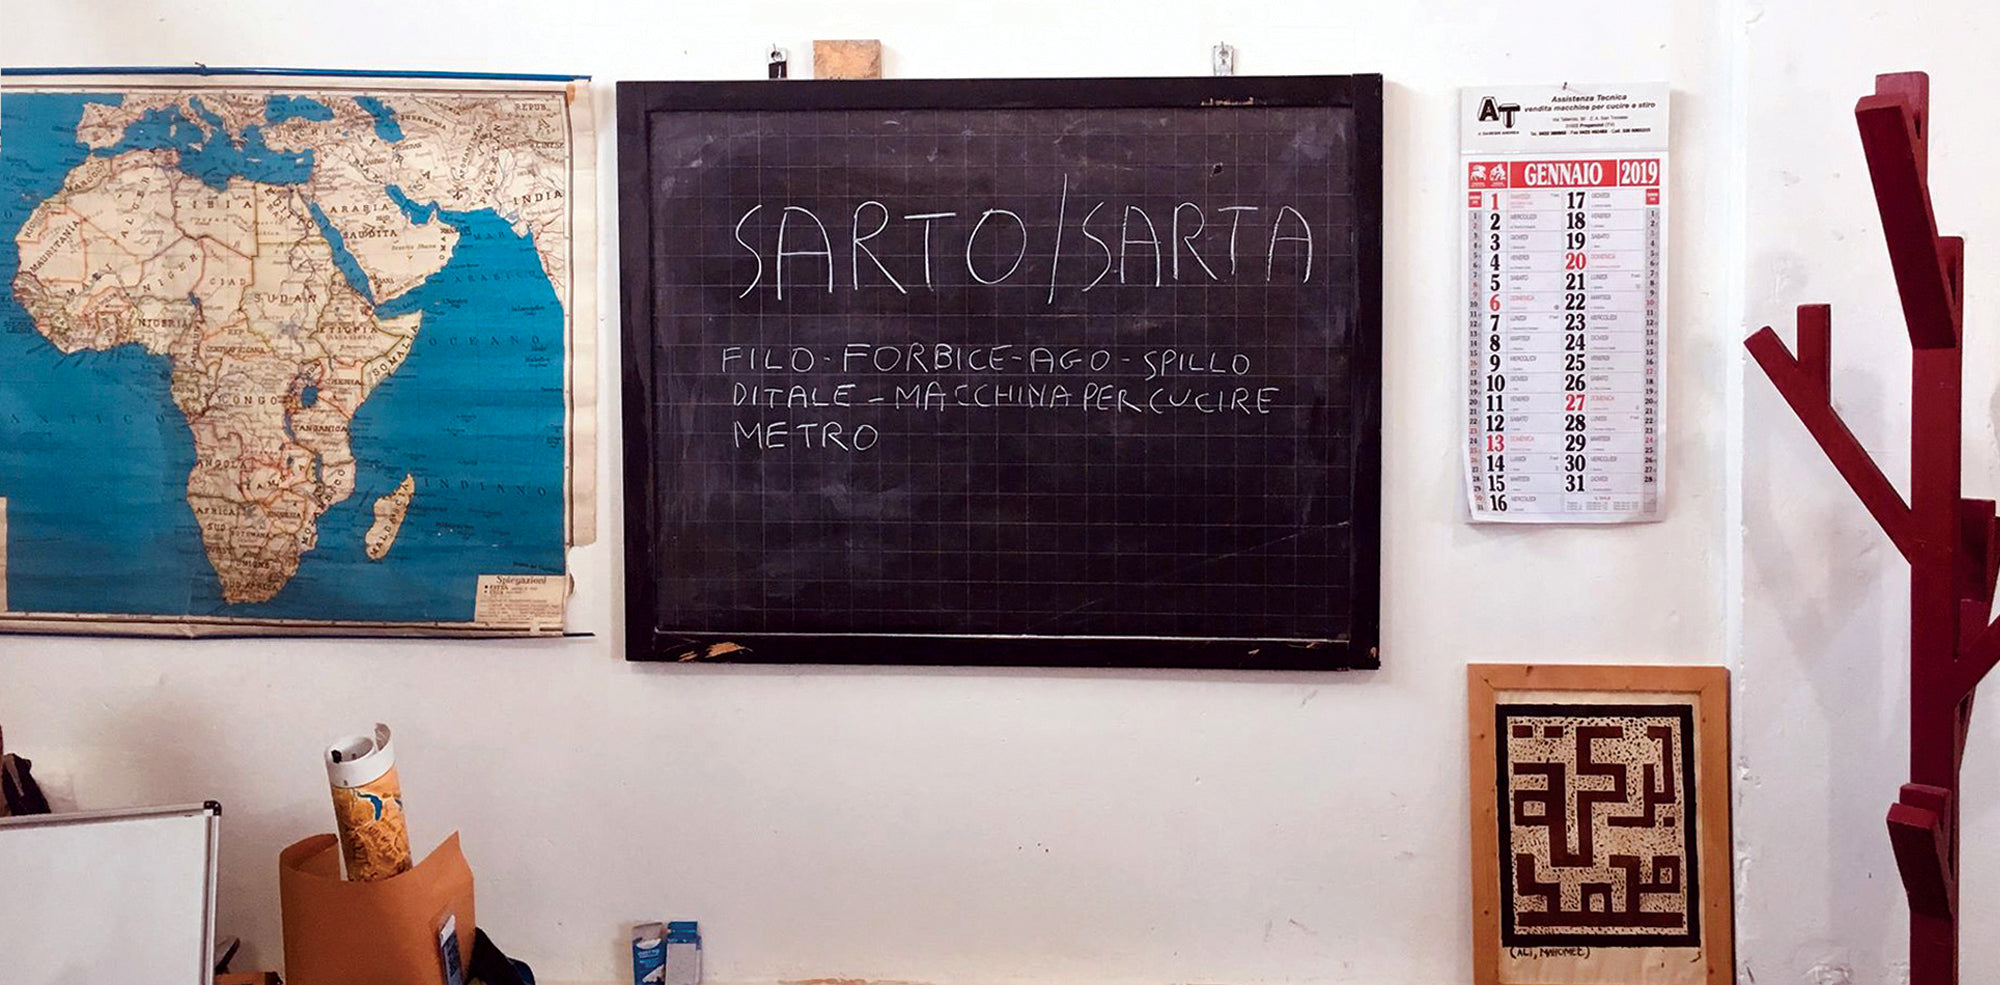 Blackboard with Sarto / Sarta written on it